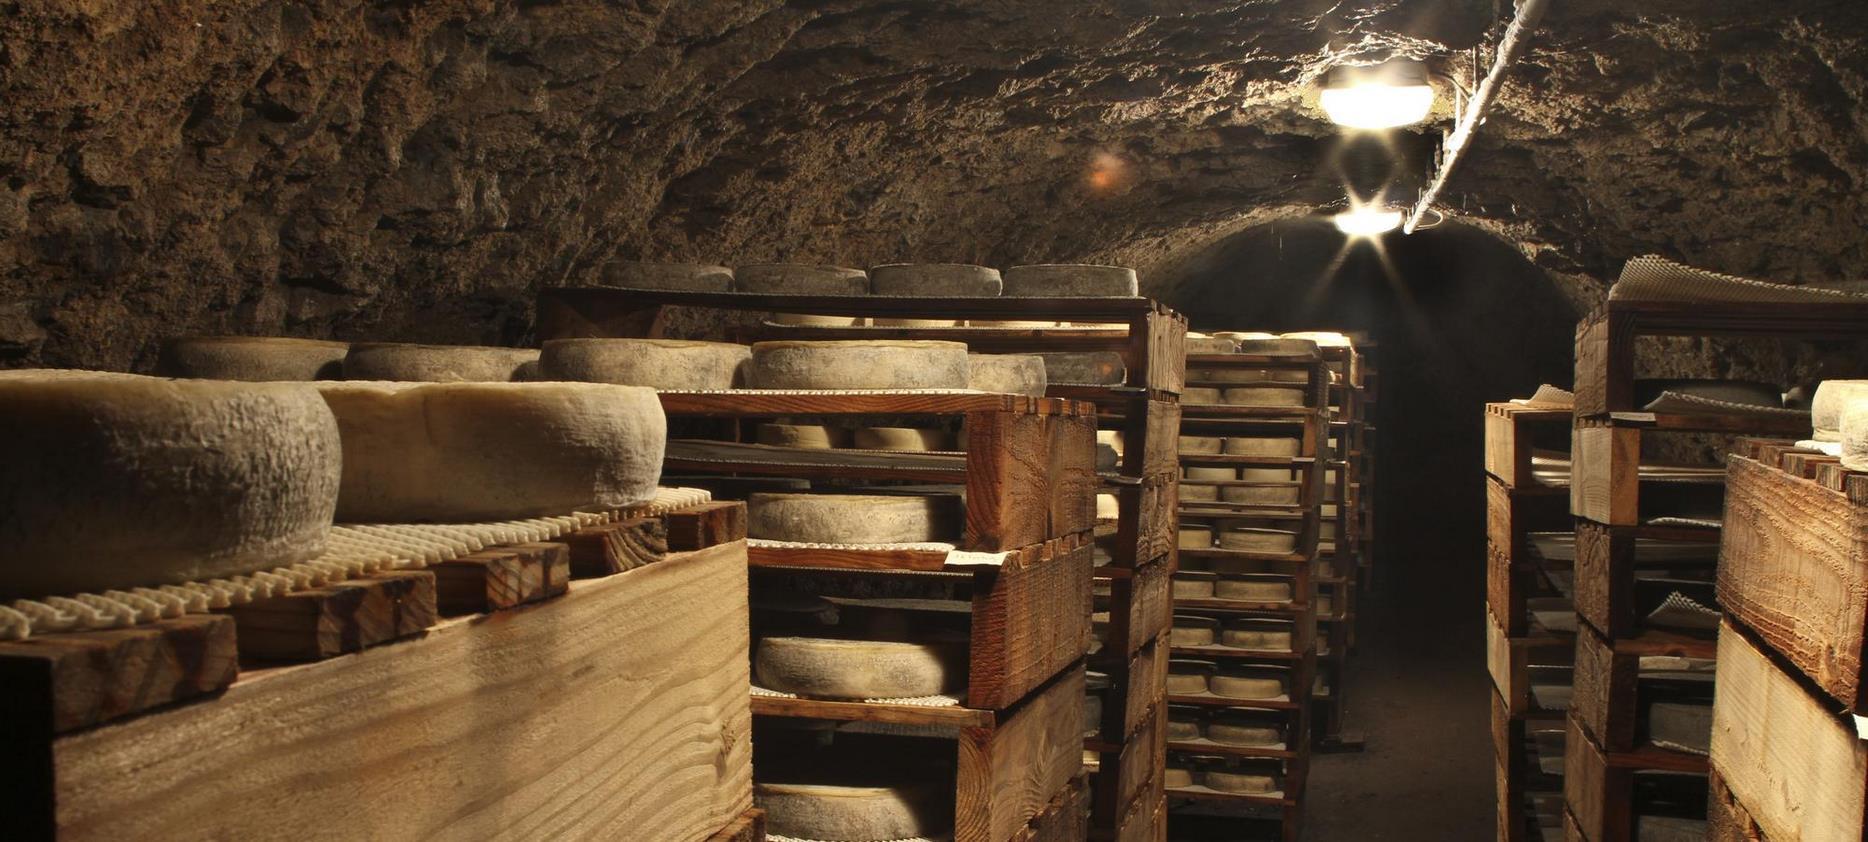 Fromage Aop Auvergne - Cave d'affinage de Saint Nectaire